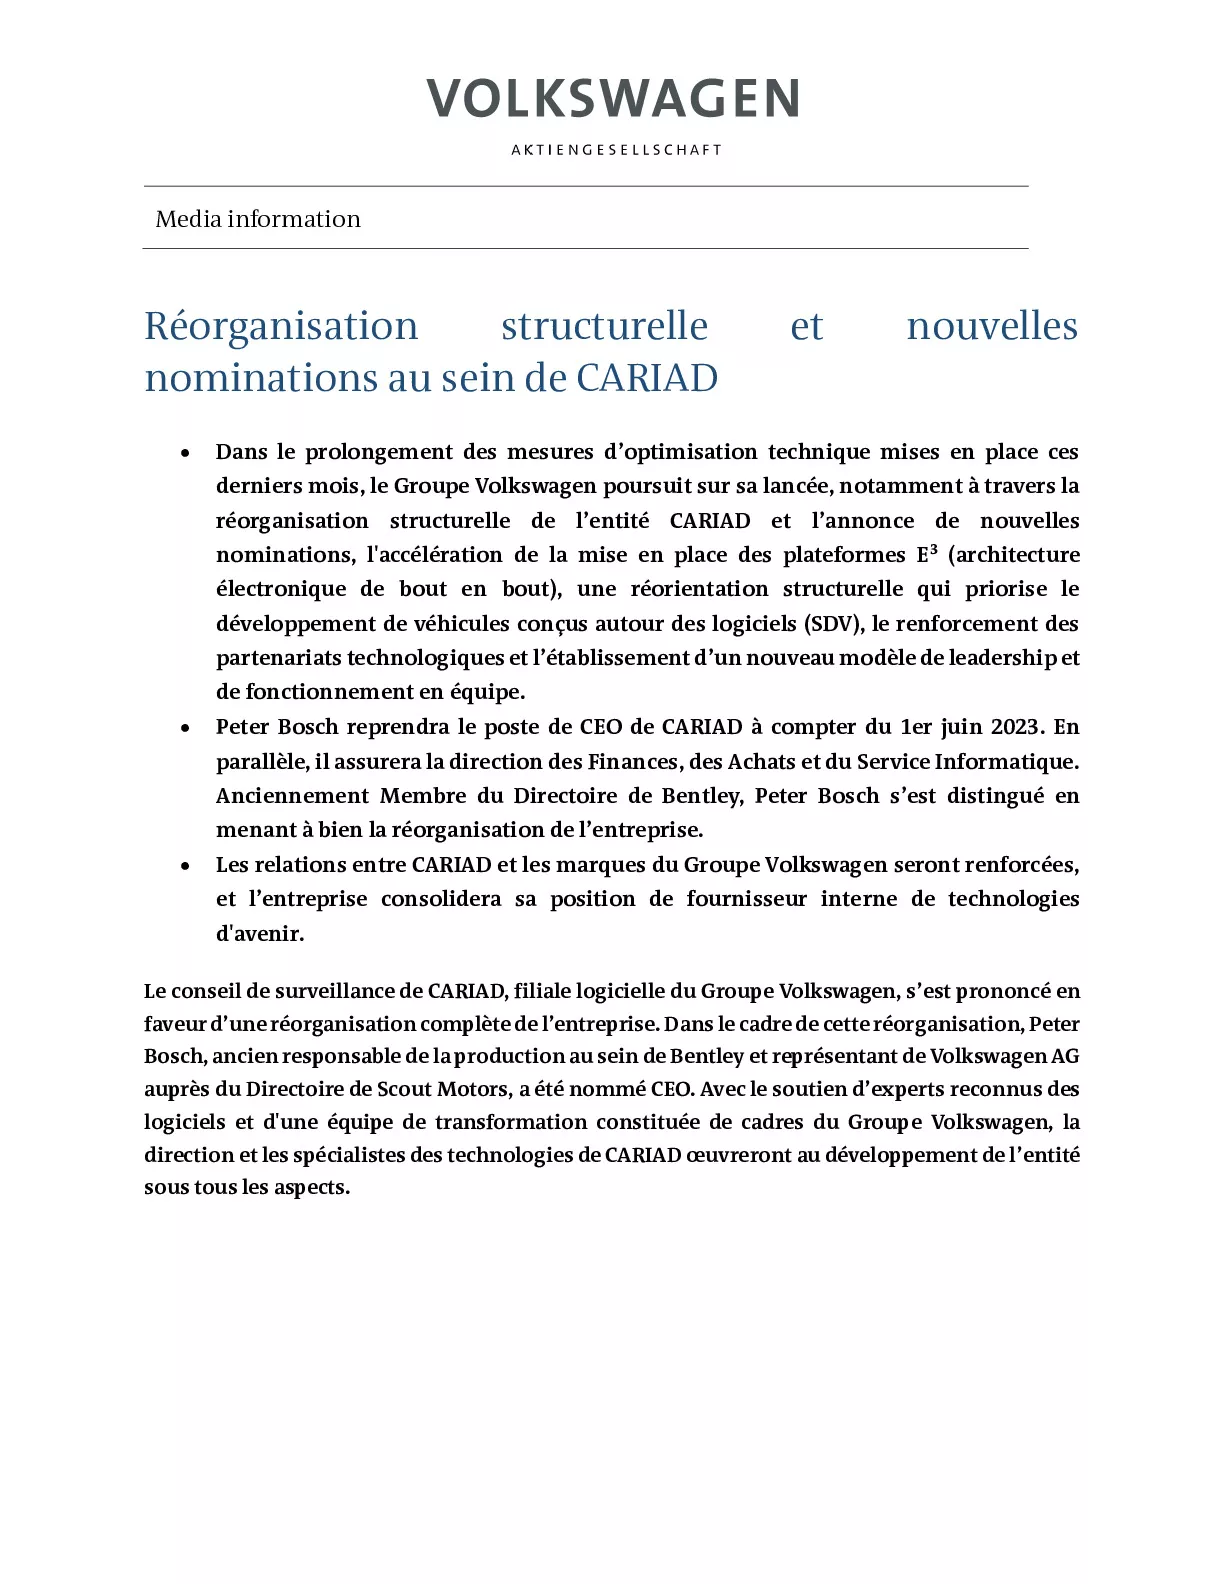 Réorganisation structurelle et nouvelles nominations au sein de CARIAD-pdf